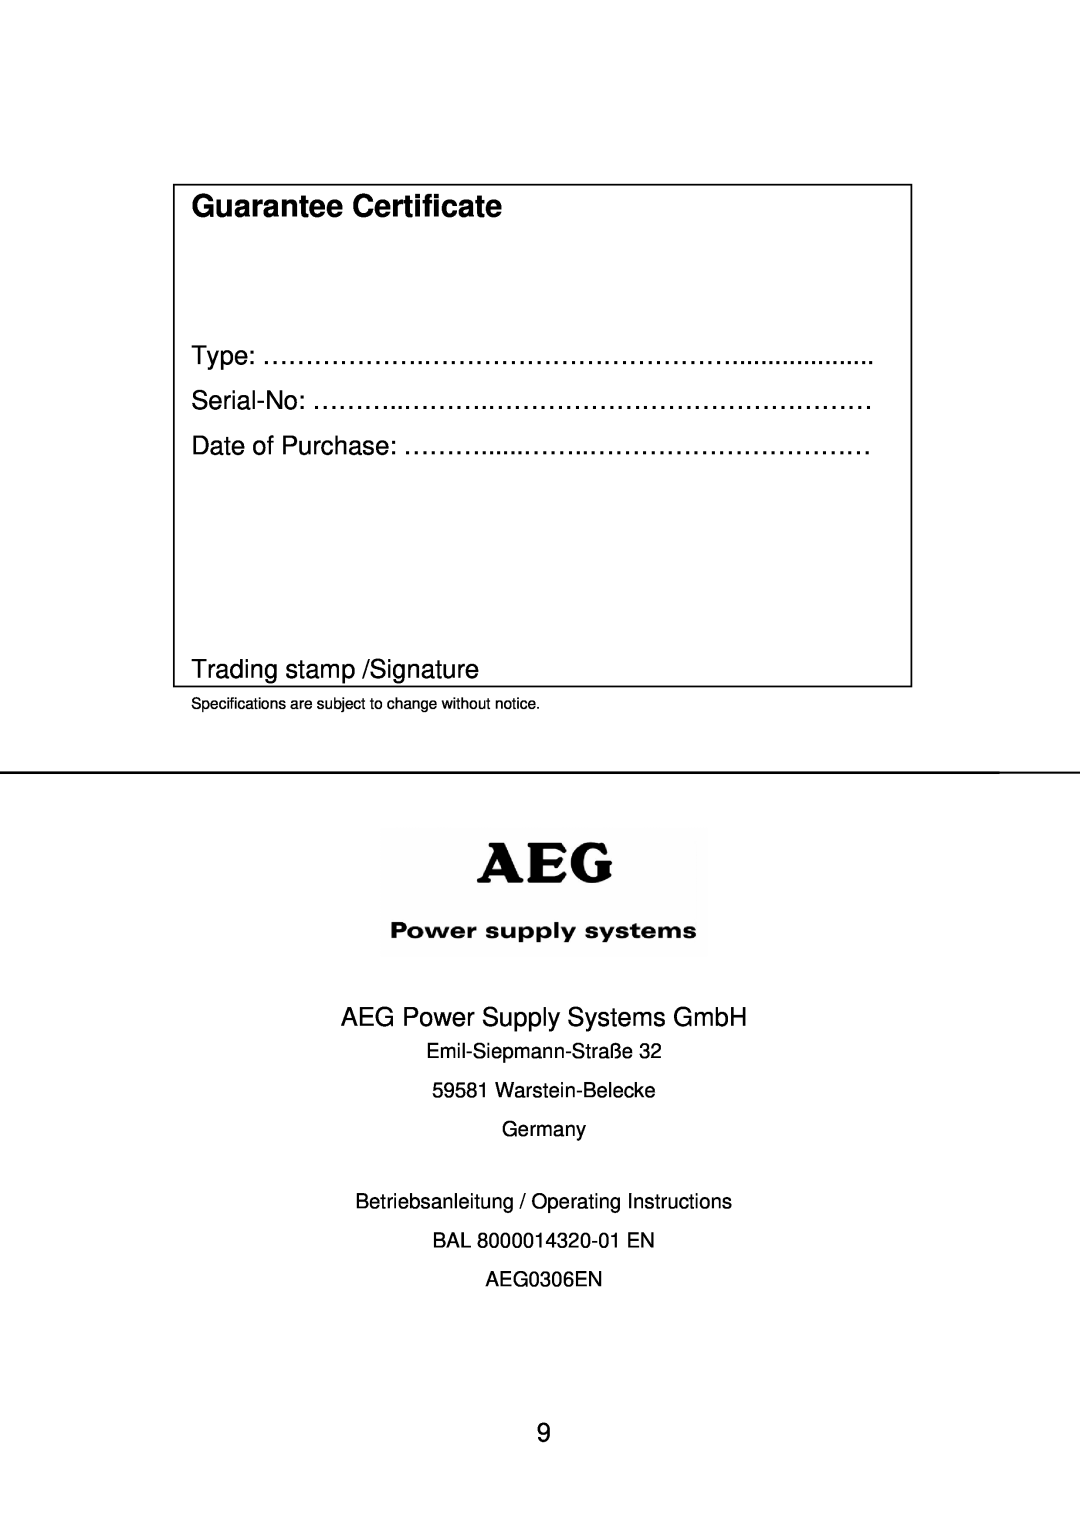 AEG MBS 2000 manual Guarantee Certificate, Emil-Siepmann-Straße 59581 Warstein-Belecke Germany, AEG0306EN 